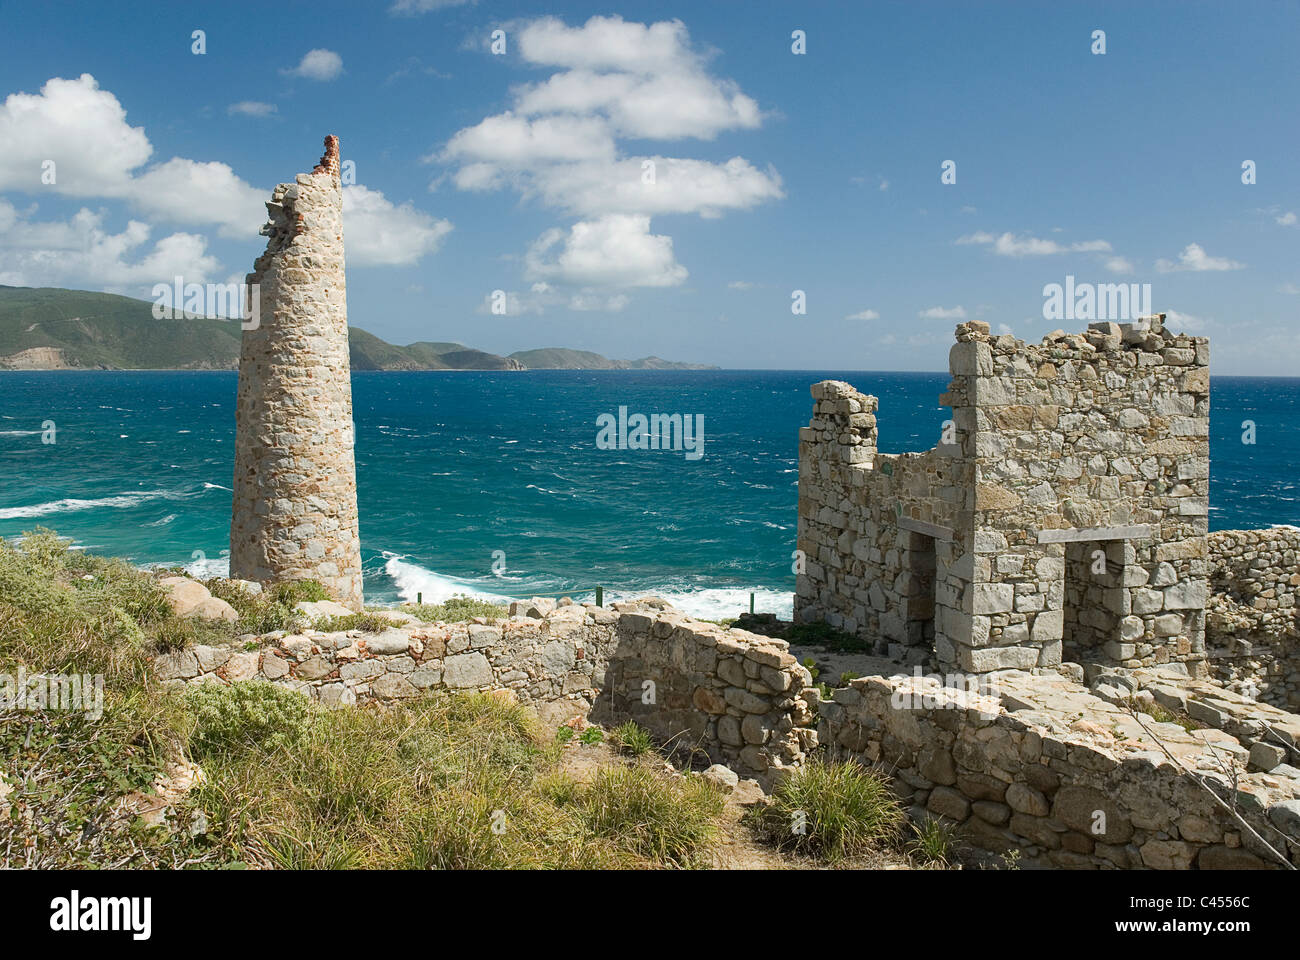 Caribe, Islas de Sotavento, las Islas Vírgenes Británicas - Virgin Gorda, antigua mina de cobre, la vista de la vieja ruina al lado del mar Foto de stock